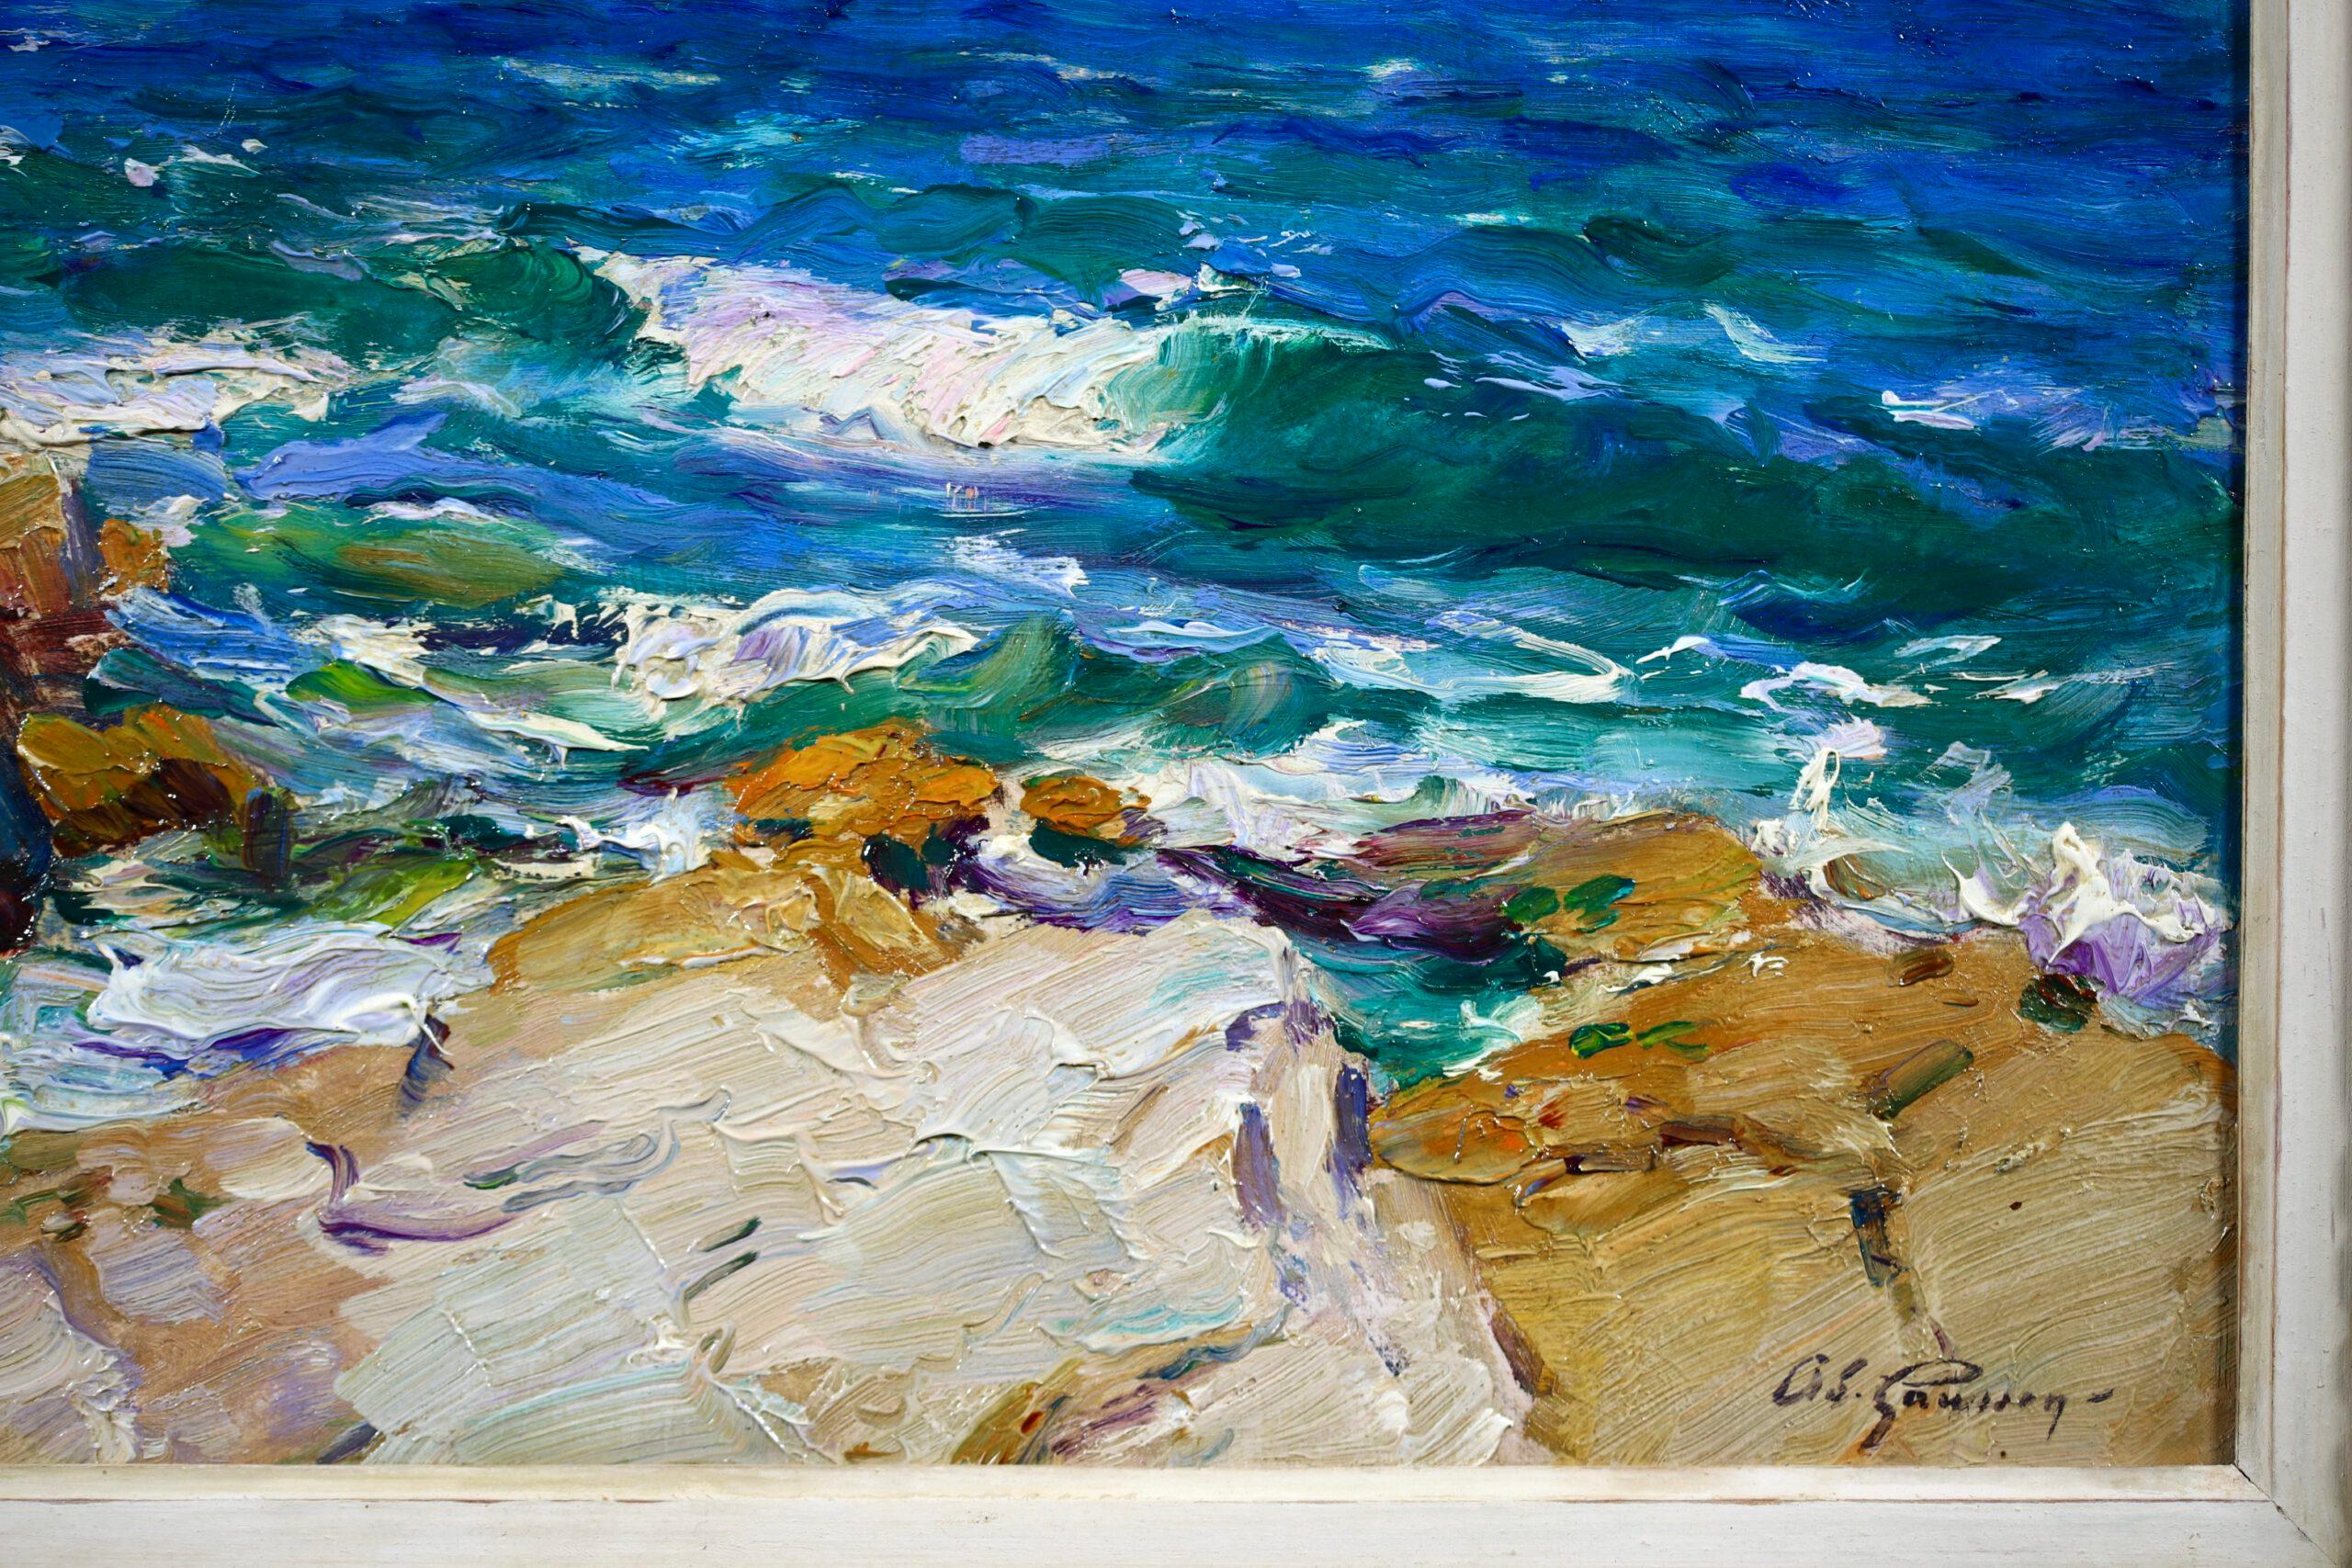 Signierte Seelandschaft Öl auf Platte circa 1910 von Französisch Maler post impressionistischen Maler Adolphe Louis Gaussen. Das Werk zeigt den Blick auf das strahlend blaue Meer von einer felsigen Küste bei Marseille, Frankreich. Draußen auf dem